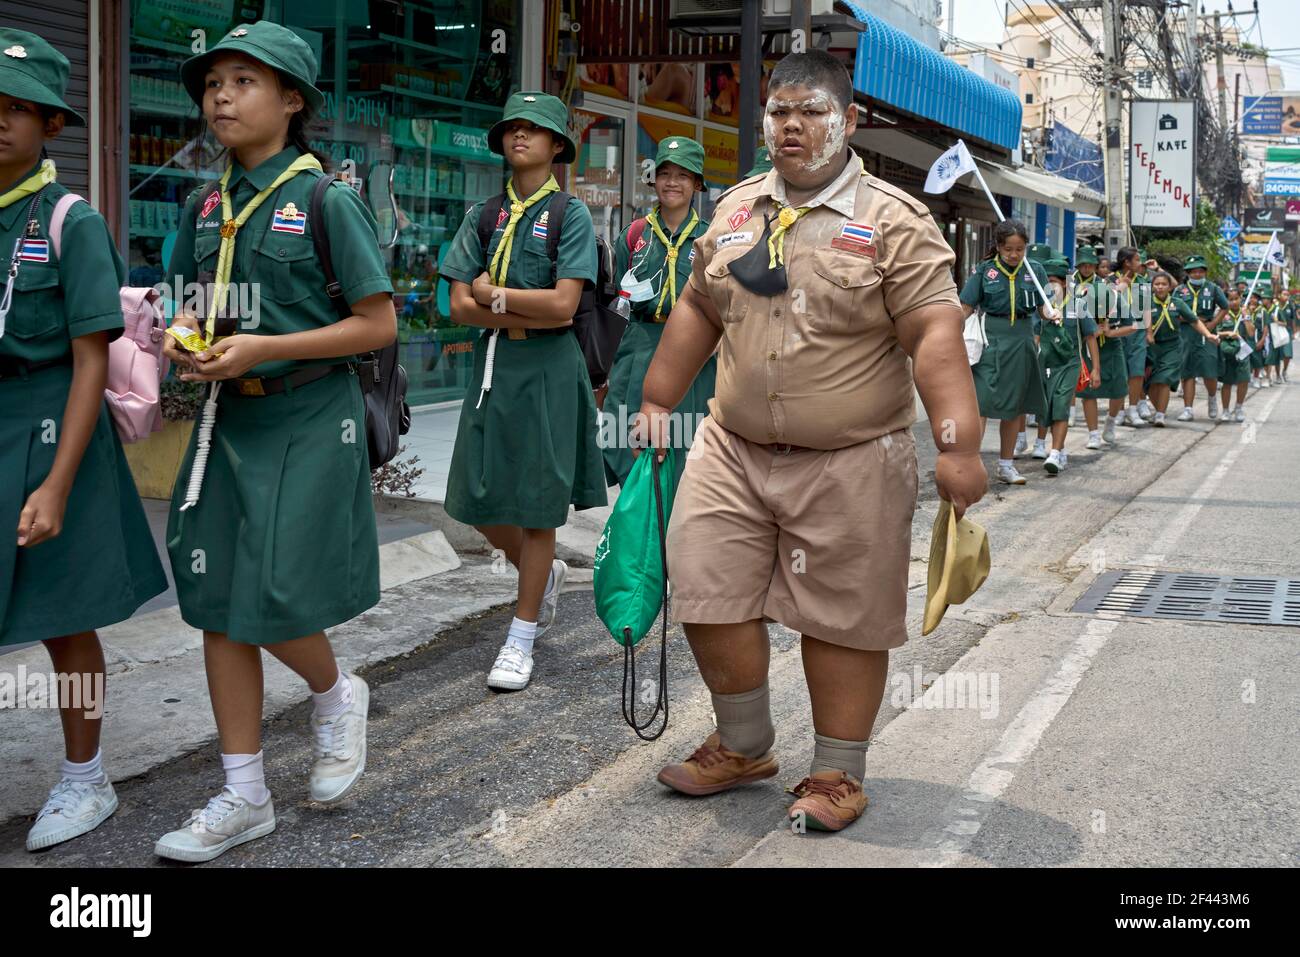 Obèse scout de garçon avec guide de fille groupe d'enfants d'école marchant dans une parade de rue. Thaïlande Asie du Sud-est Banque D'Images